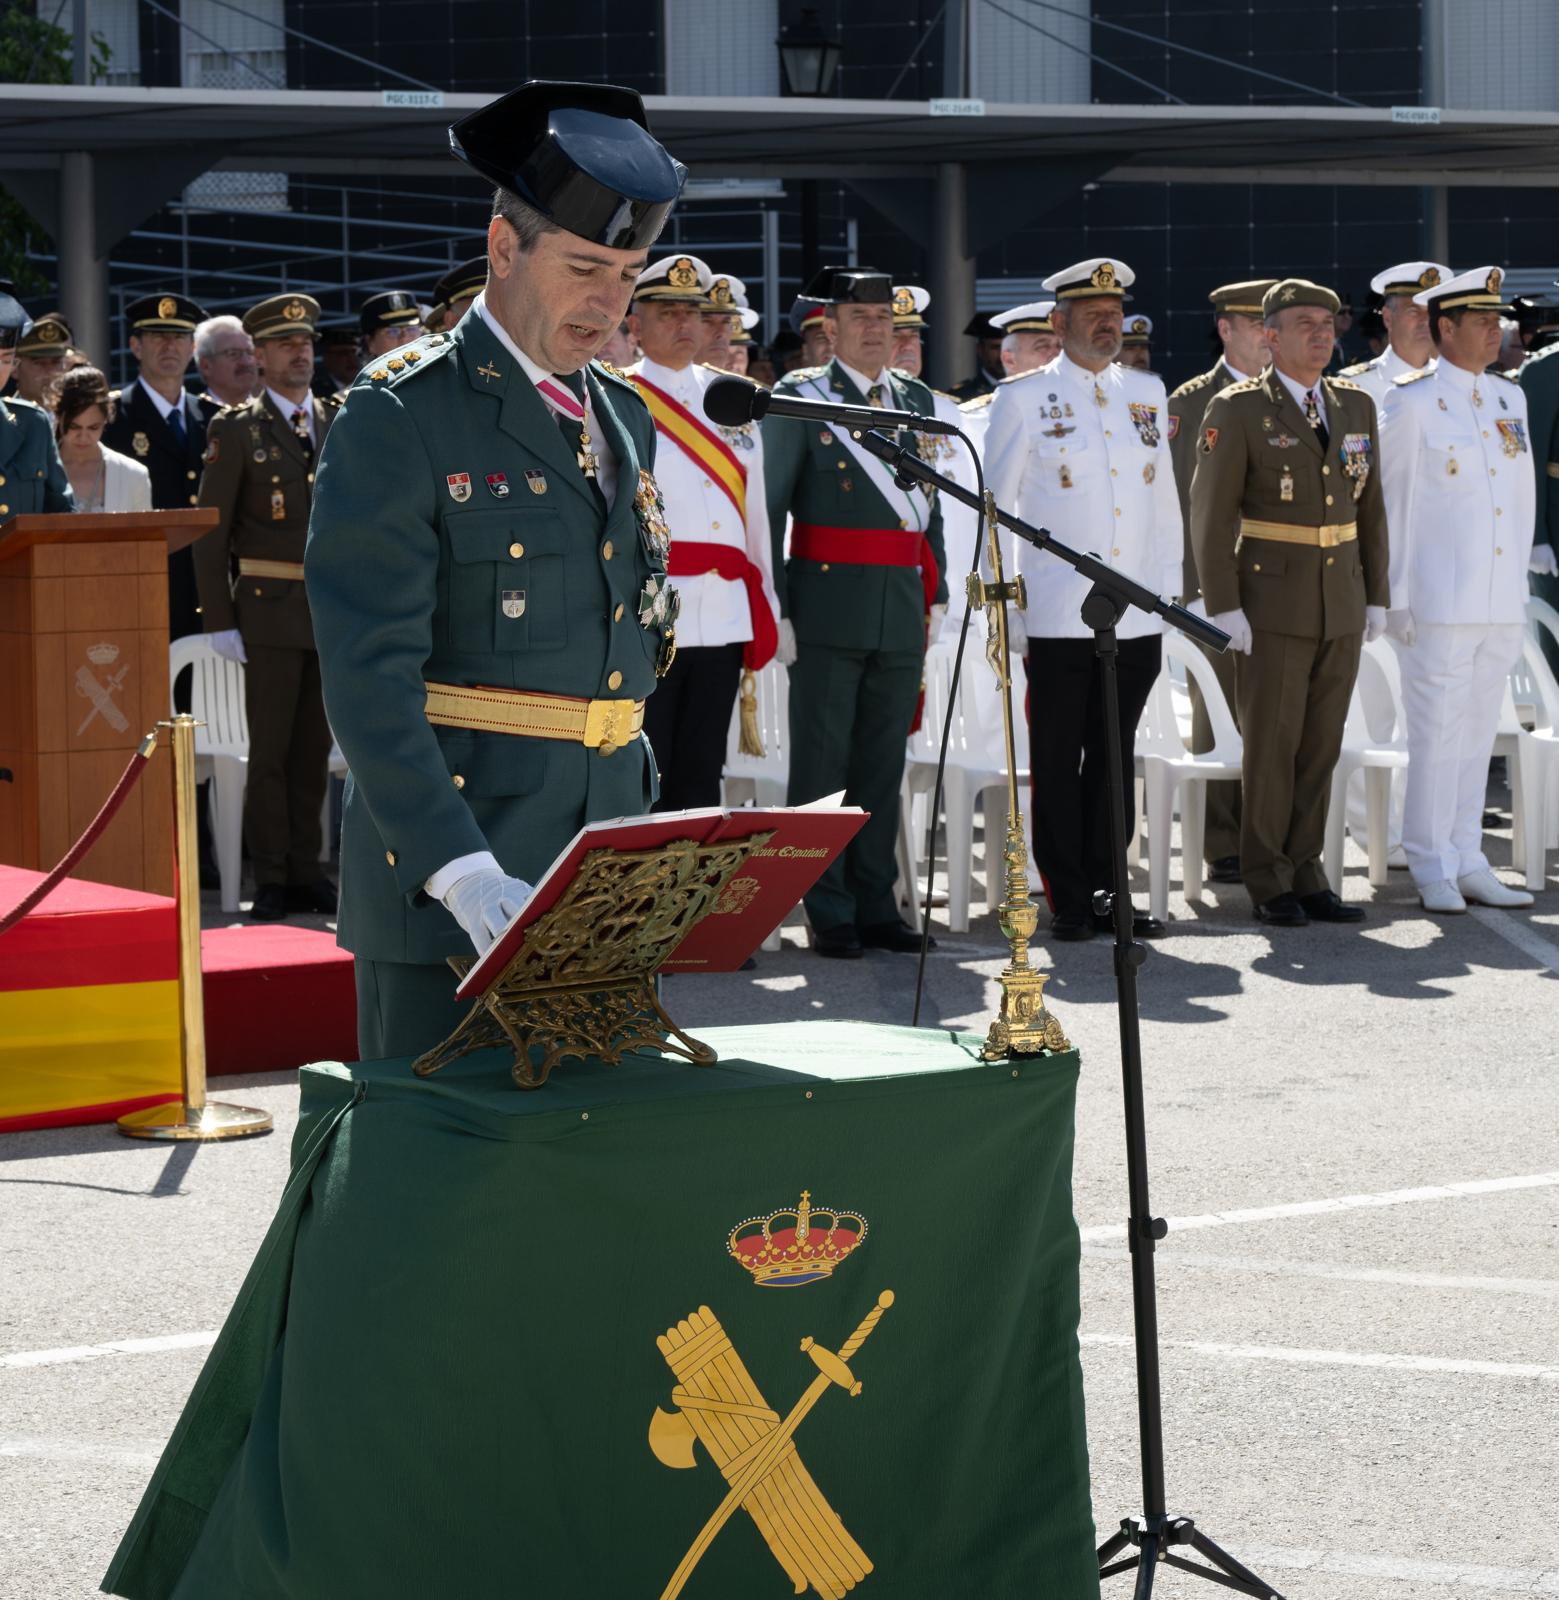 El director general de la Guardia Civil preside en Cádiz el 180 aniversario del Cuerpo y la toma de posesión del jefe de la Comandancia